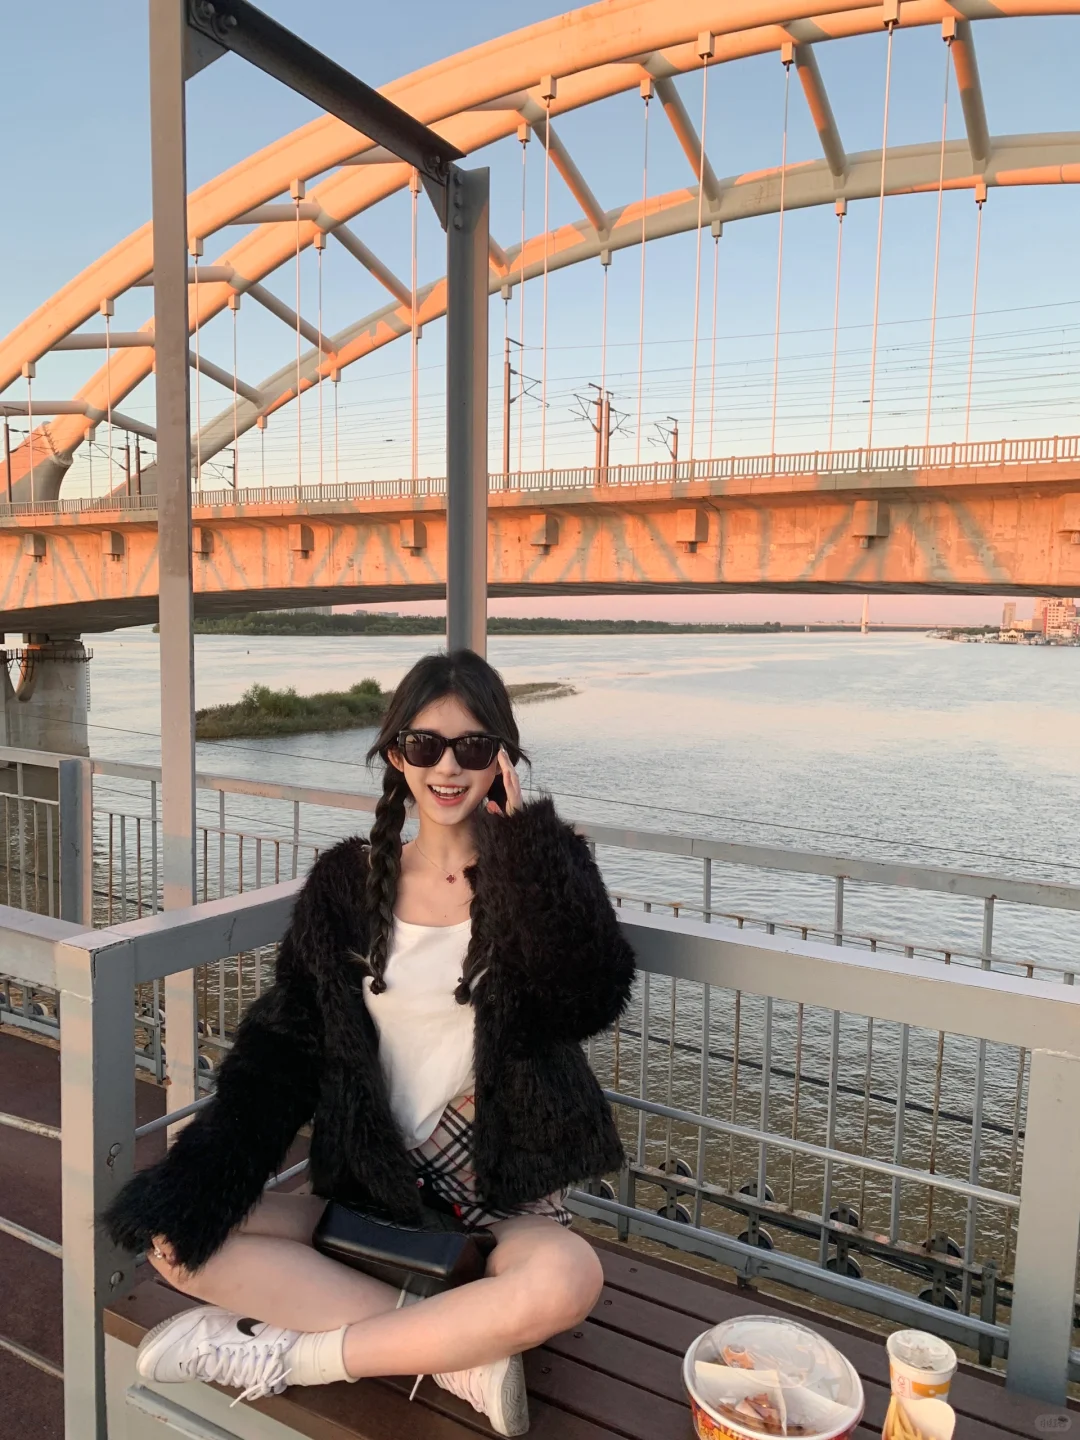 琳酱 哈尔滨铁路桥 在松花江上看日落 - 小红书